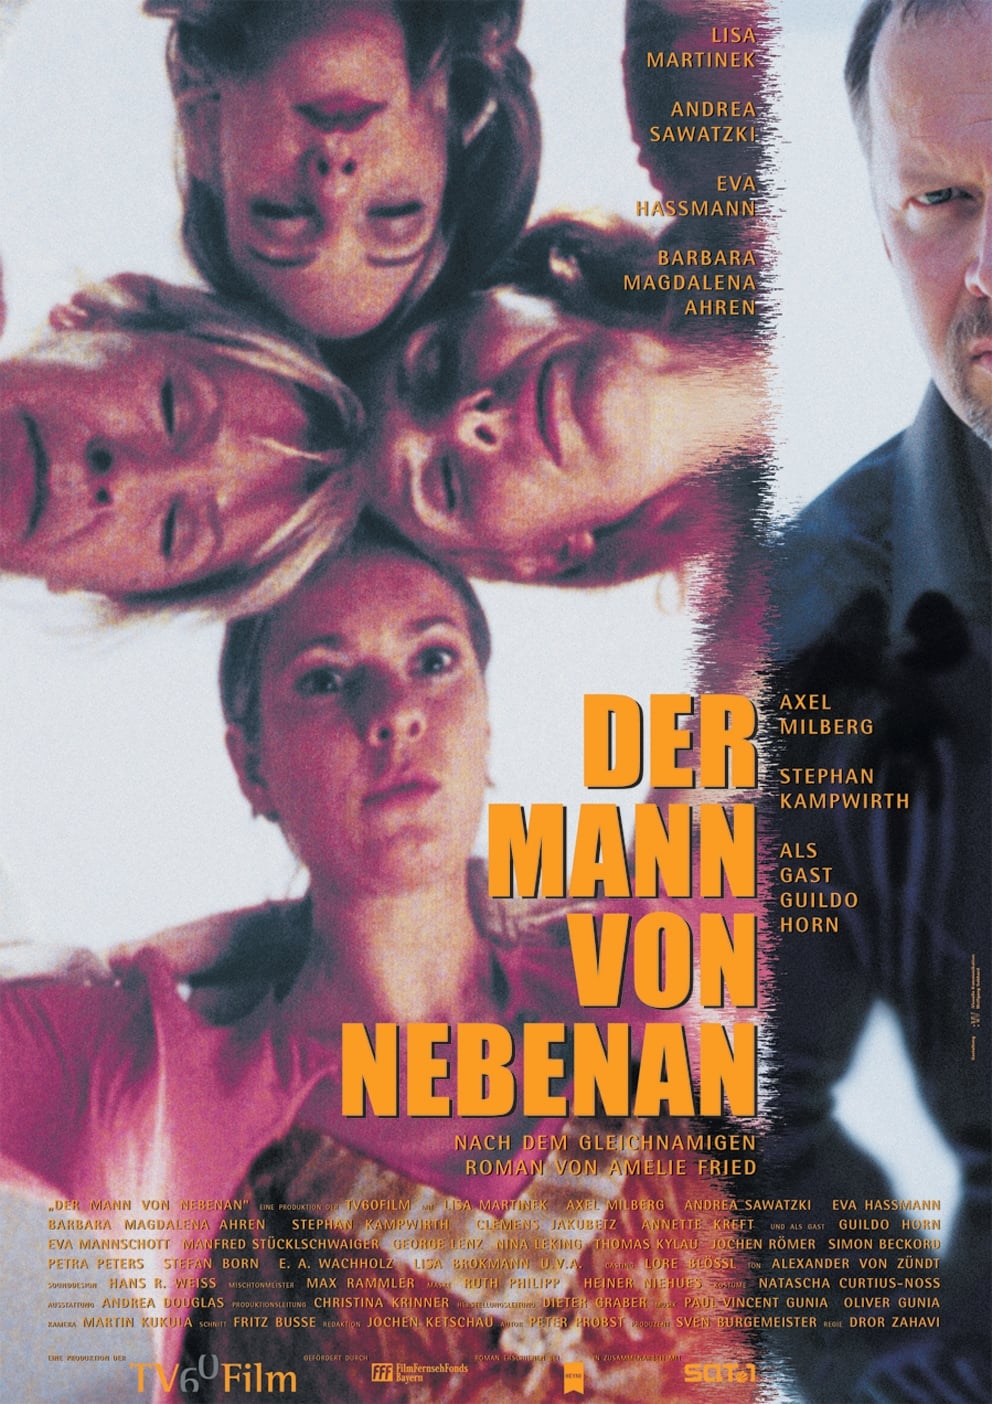 Der Mann von nebenan (2002)